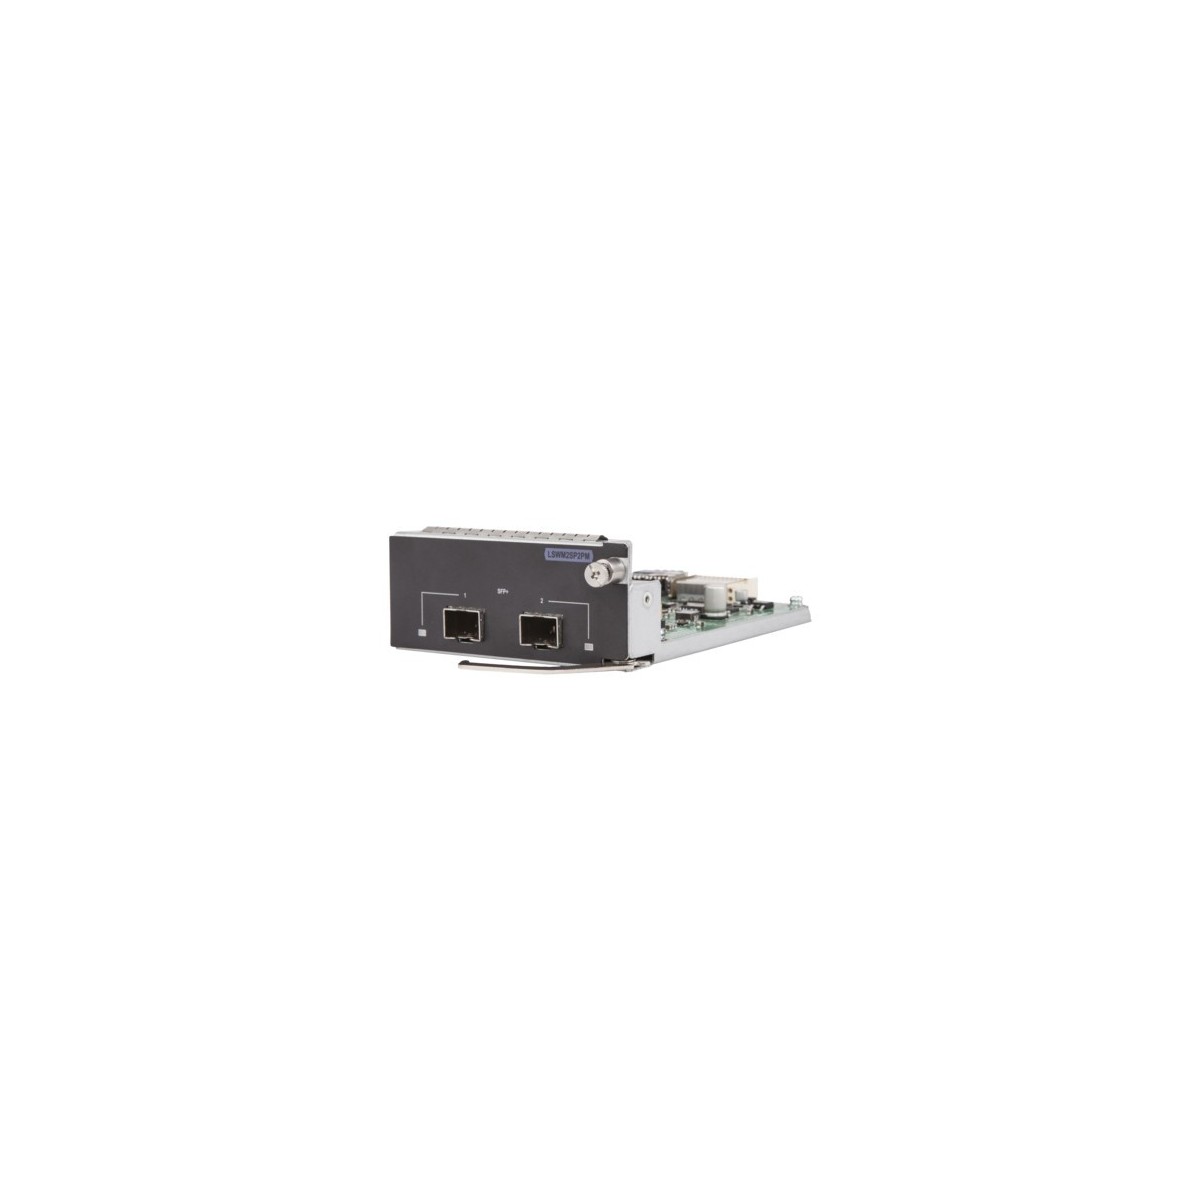 HPE 5130/5510 10GbE SFP+ 2-port Module - SFP+ - 10 Gbit/s - HPE FlexNetwork 5130 HI & HPE FlexNetwork 5510 HI - 95 x 148 x 40 mm